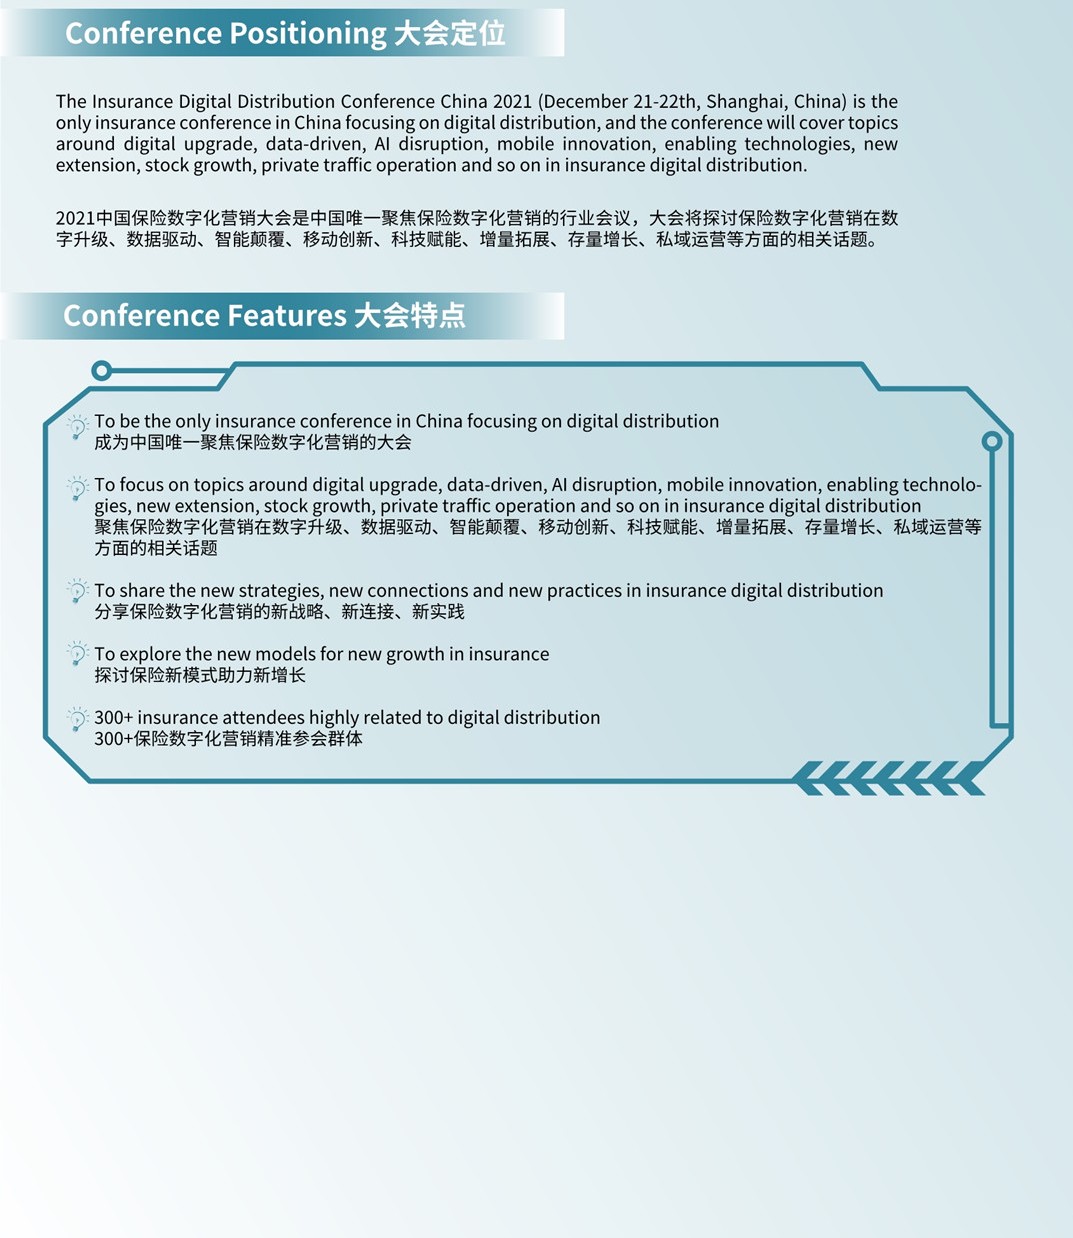 2021中国保险数字化营销大会_门票优惠_活动家官网报名